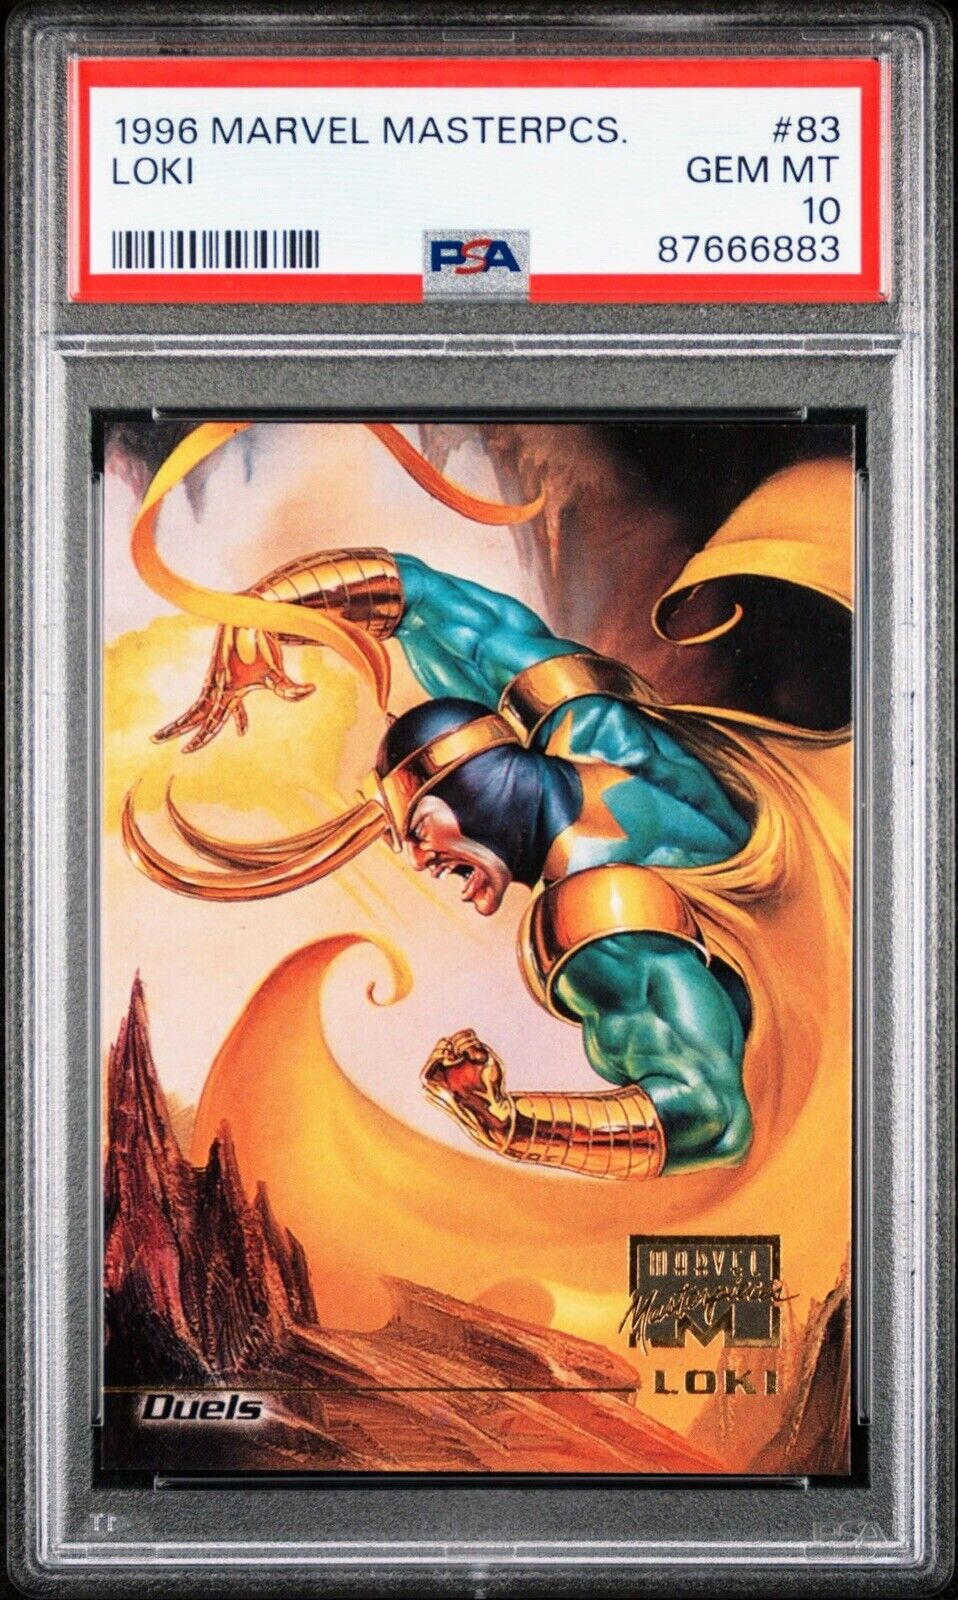 PSA 10 GEM 💎 MINT 1996 Marvel Masterpieces Duels  Loki #44 Low Pop 1 of Only 5